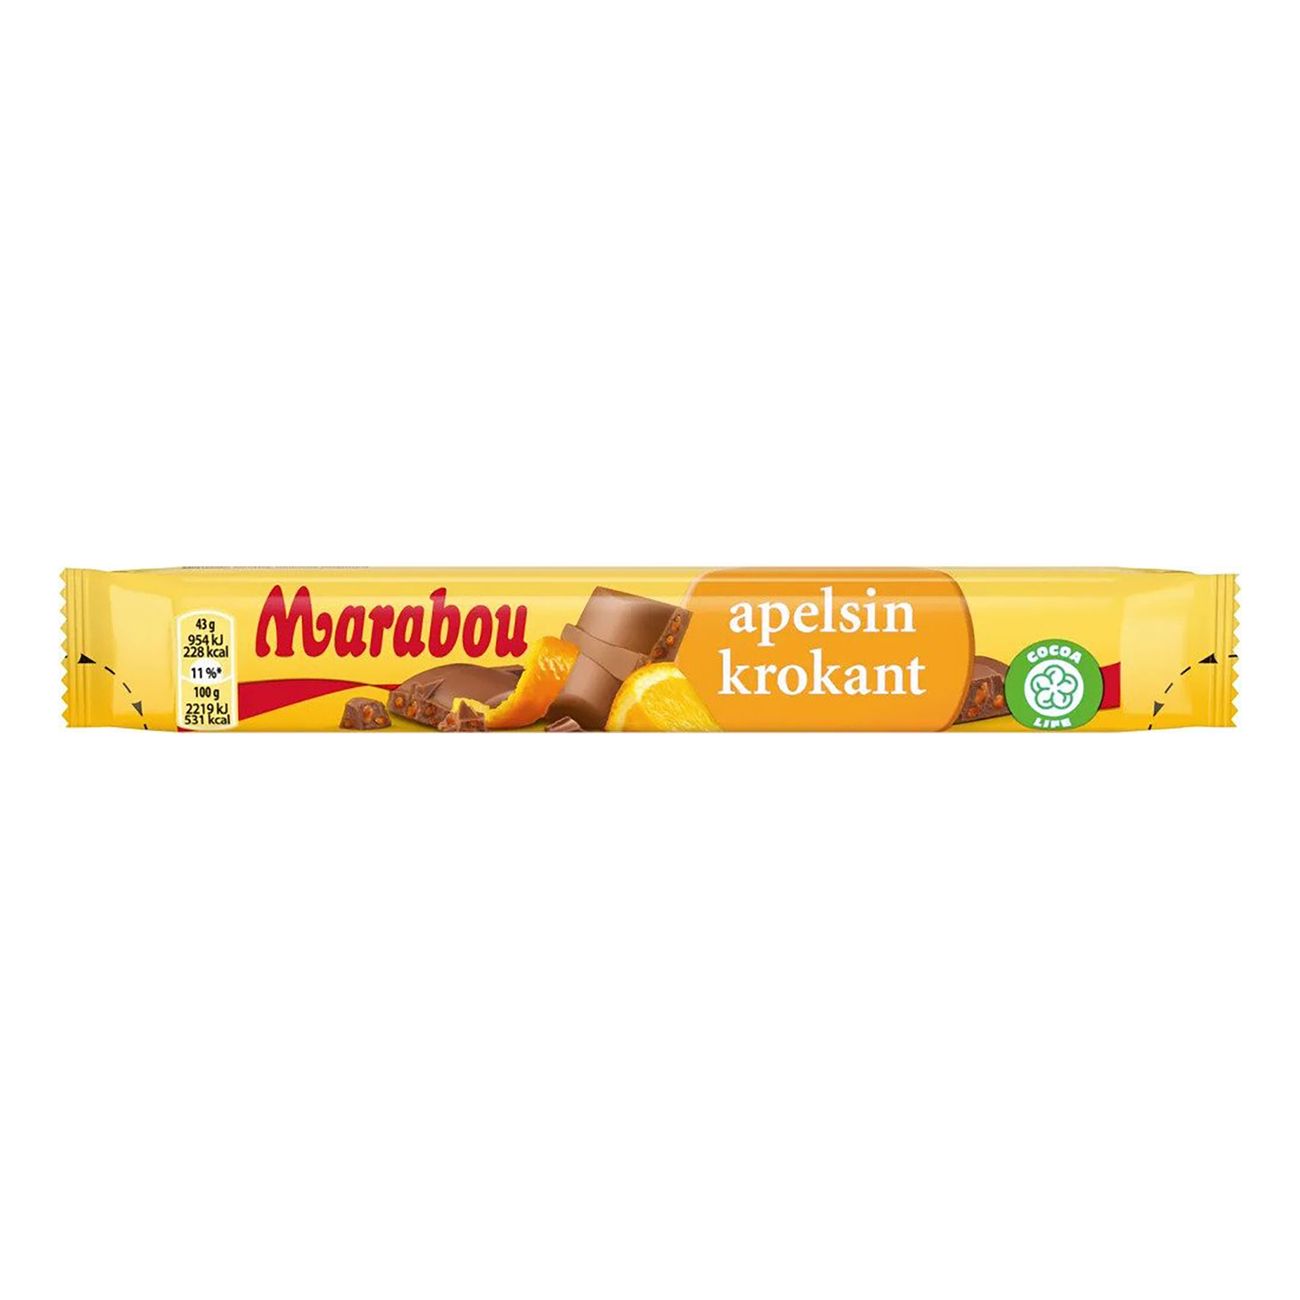 marabou-apelsinkrokant-dubbel-85470-1